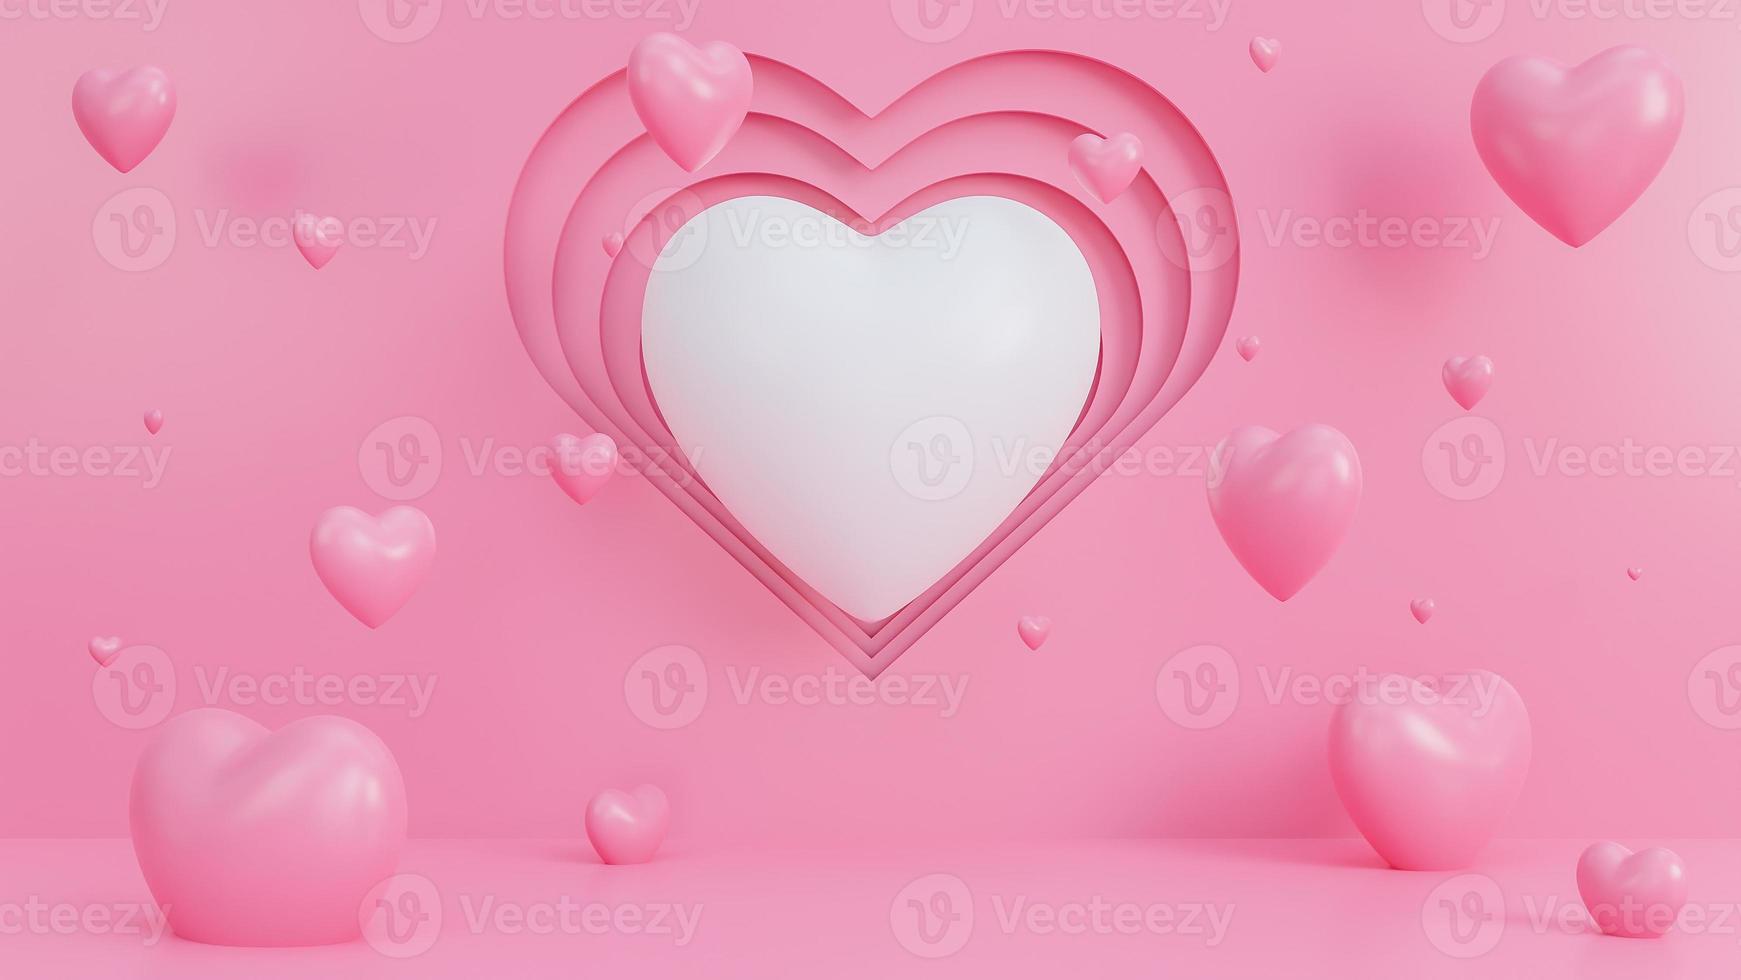 happy Valentijnsdag behang in papierstijl met veel harten 3D-objecten op roze achtergrond., 3D-model en illustratie. foto